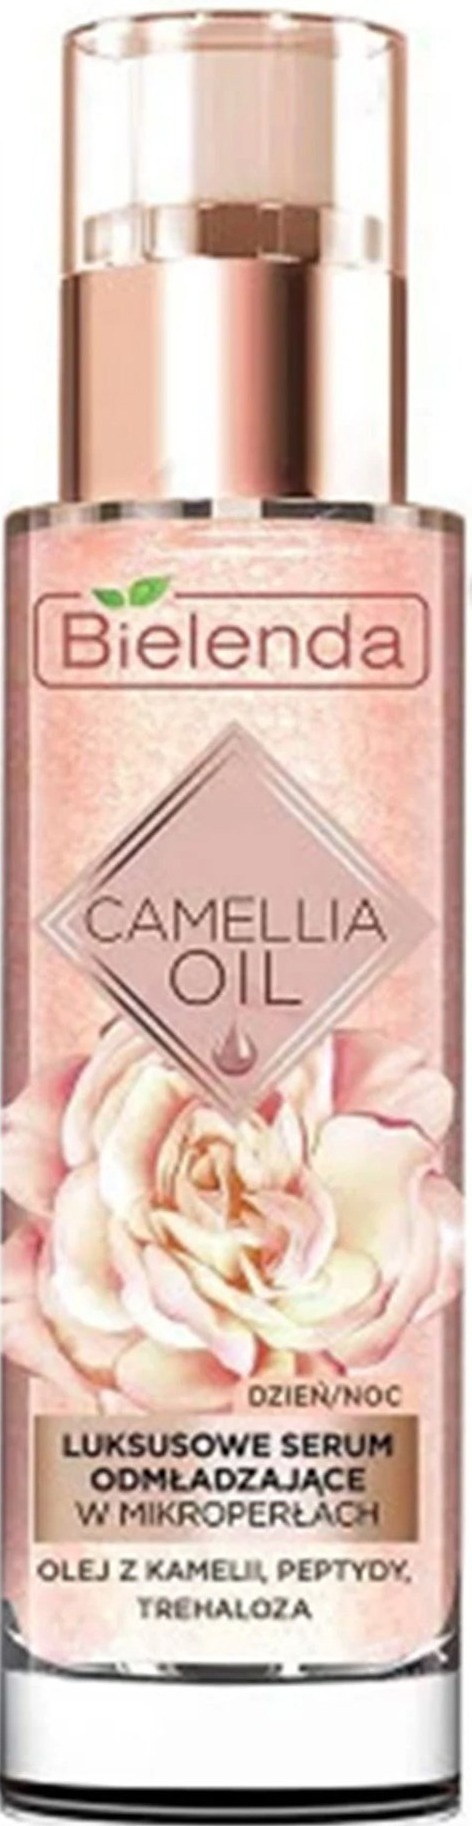 Bielenda Camellia Oil Rejuvenating Serum